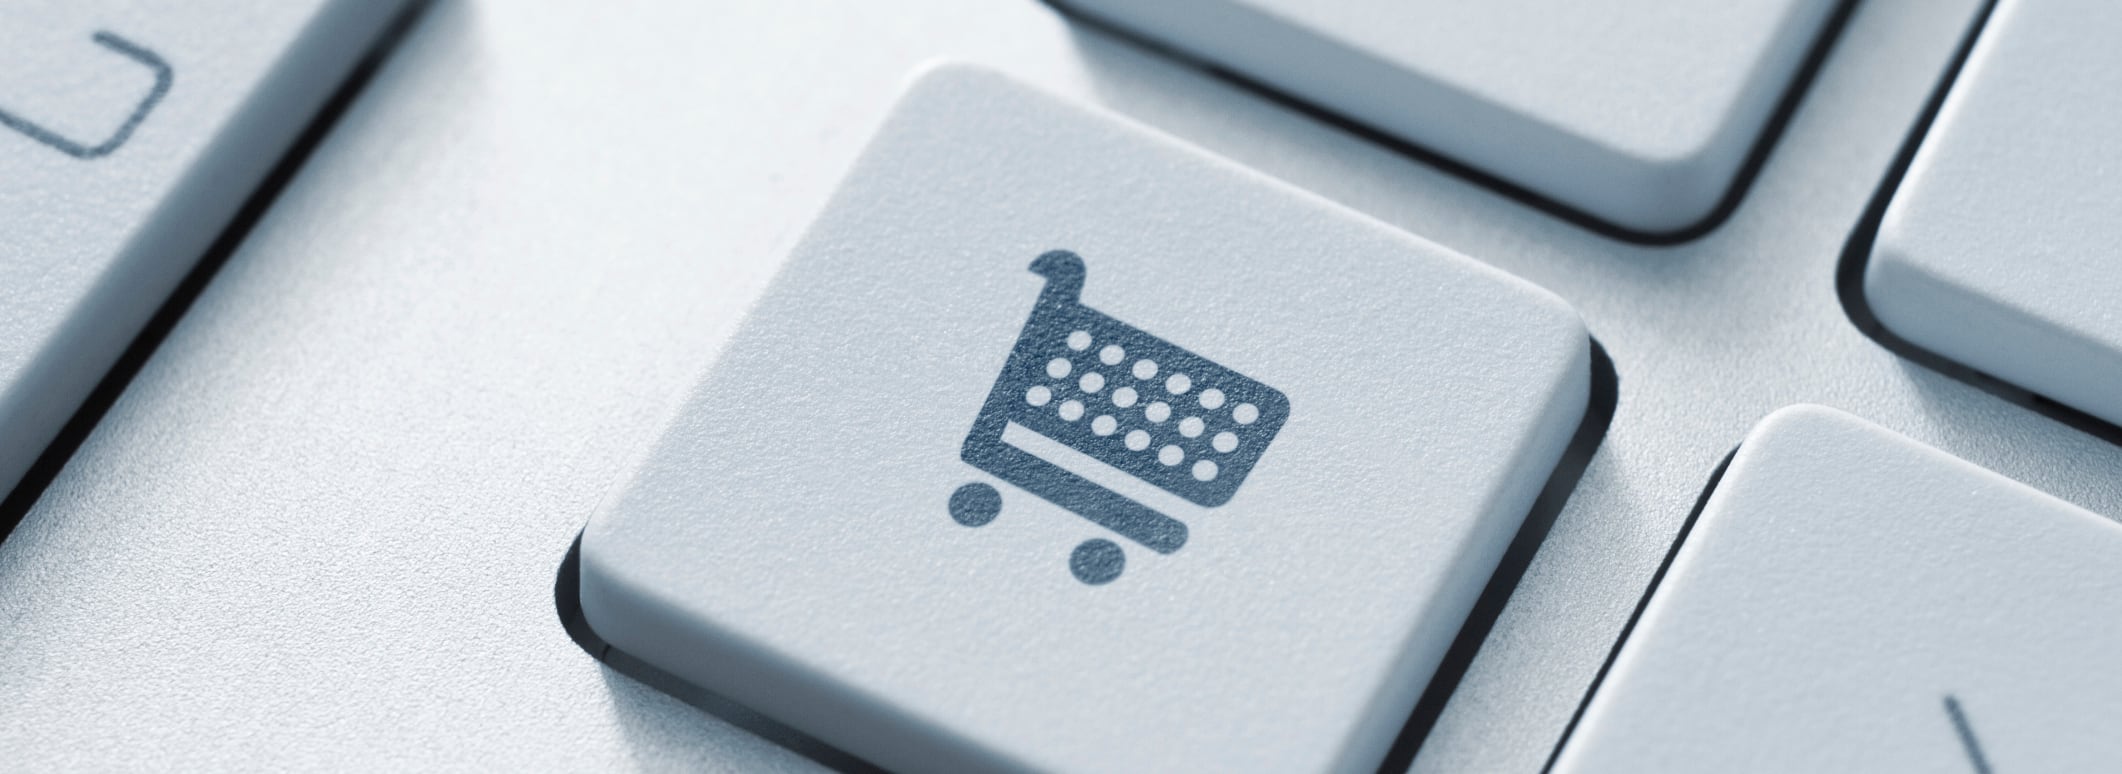 A computer button shows a shopping cart icon.